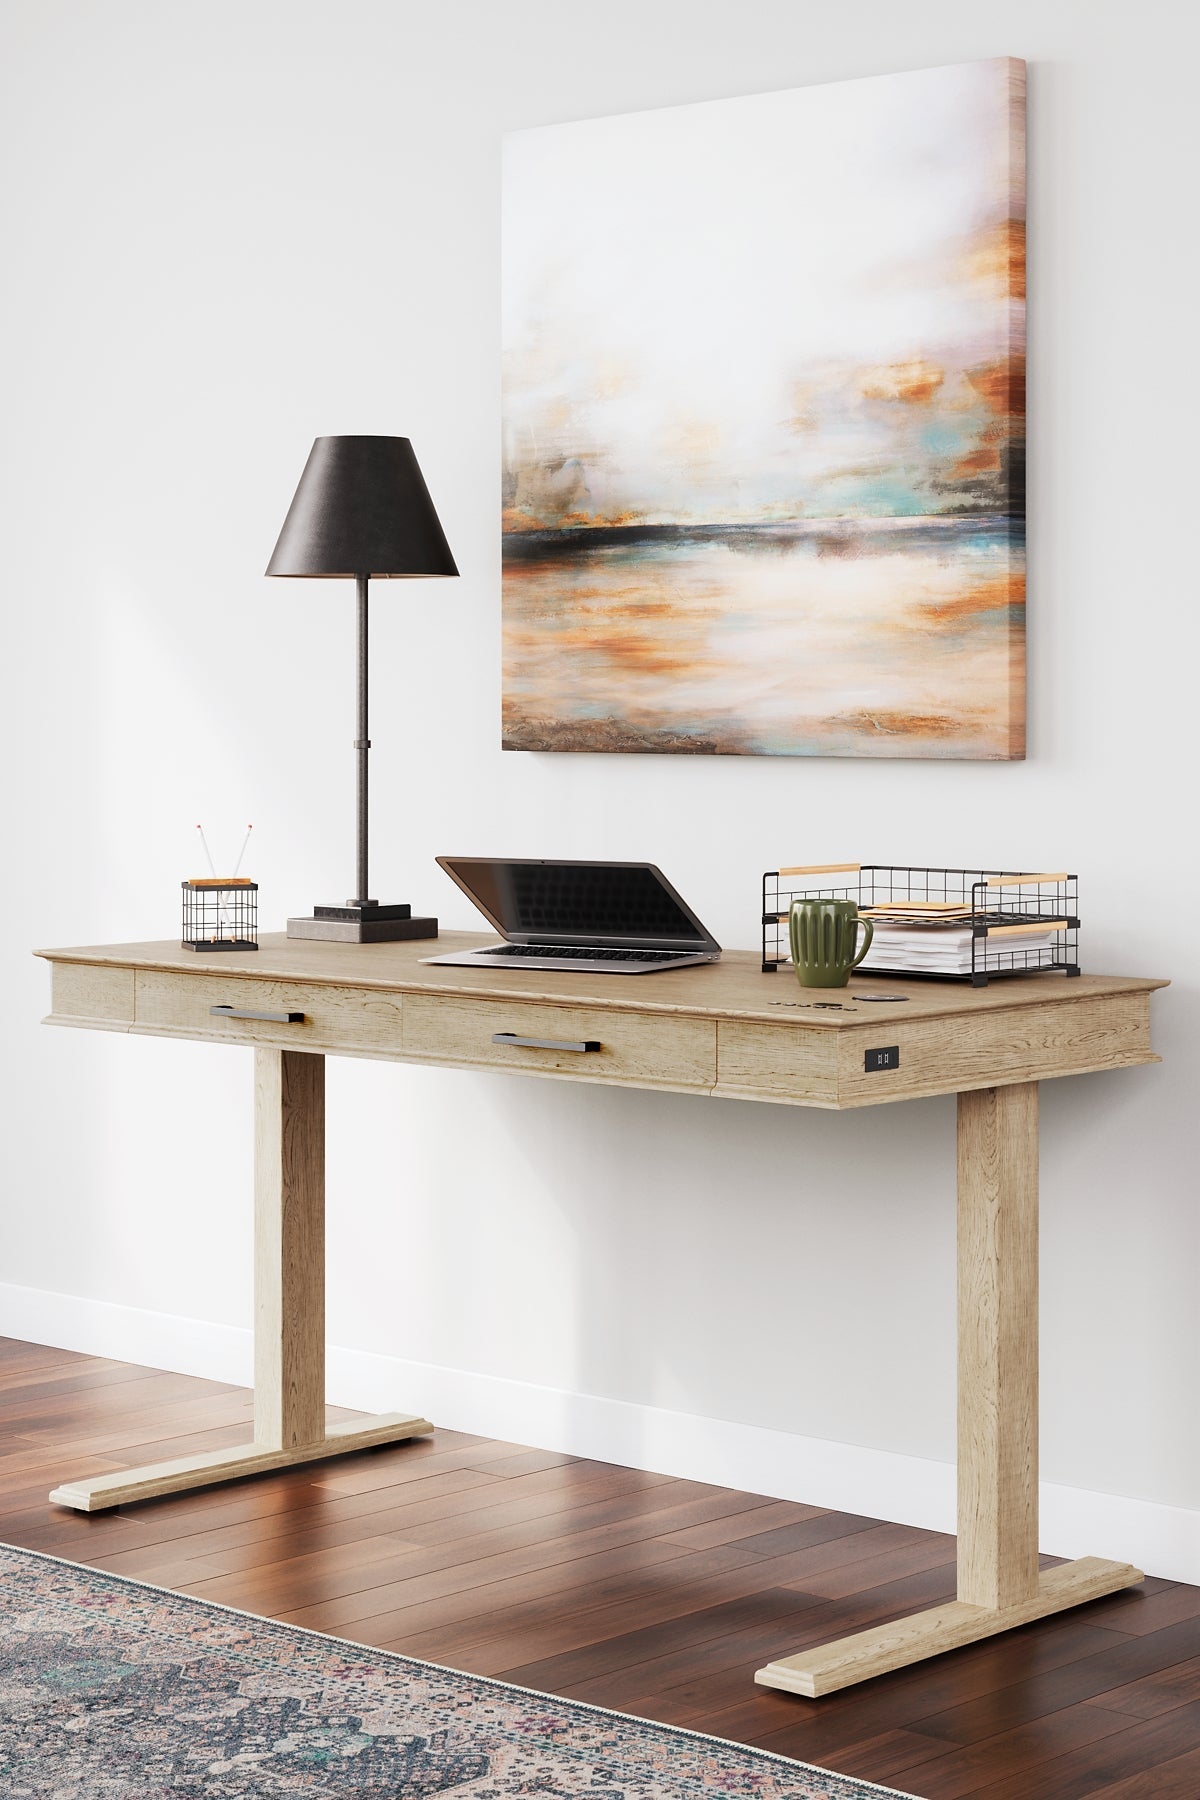 Elmferd Adjustable Height Desk Smyrna Furniture Outlet